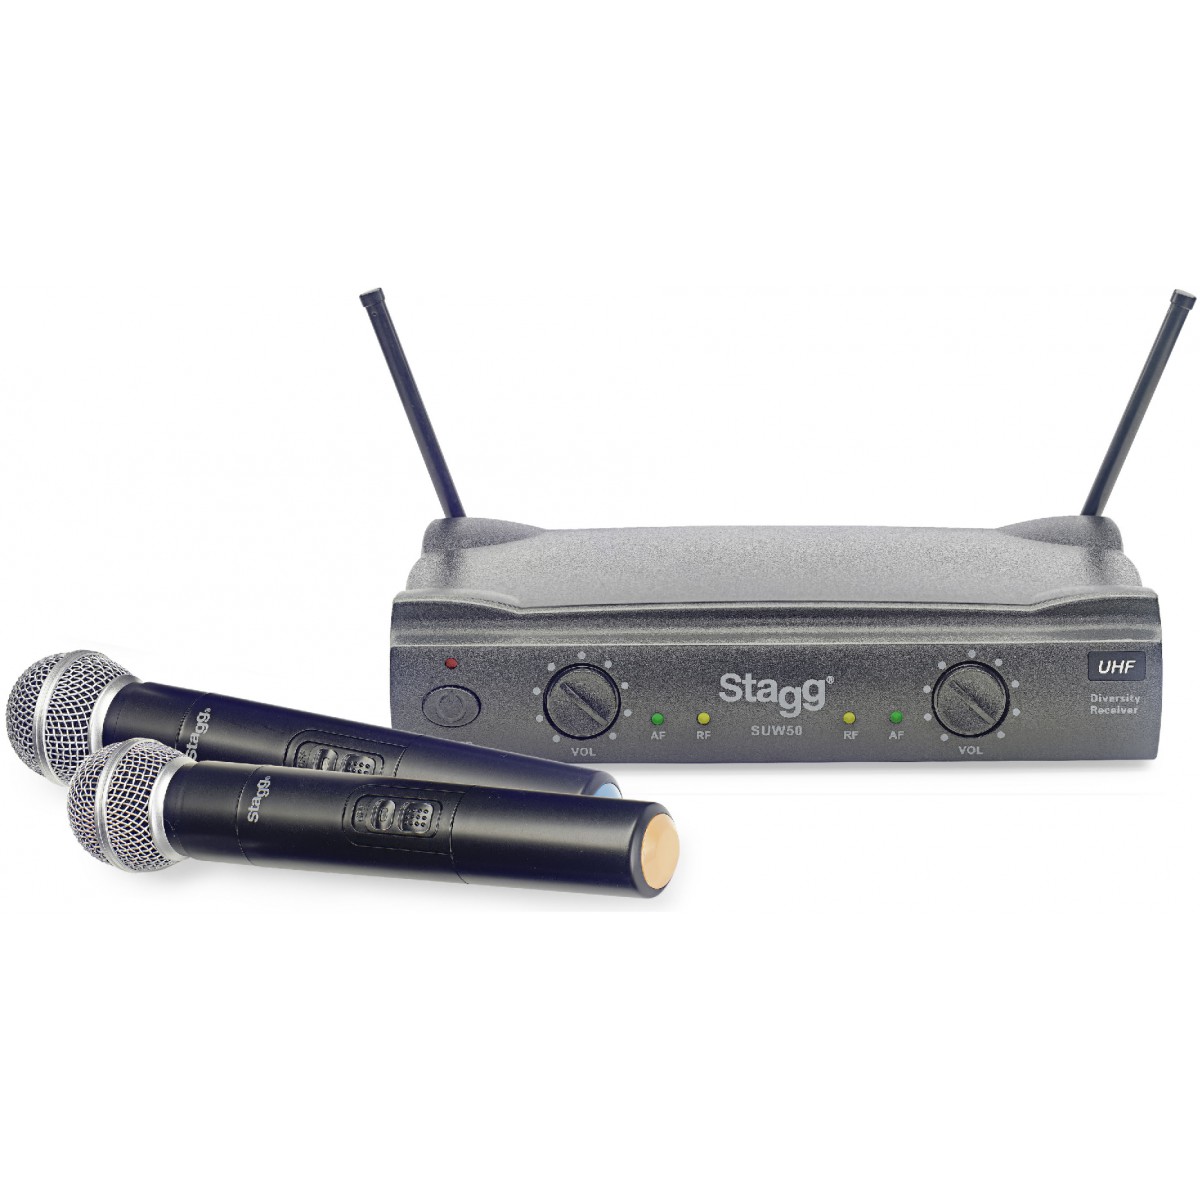 Fotografie Stagg SUW 50 MM EG, UHF mikrofonní set 2 kanálový, 2x ruční mikrofon